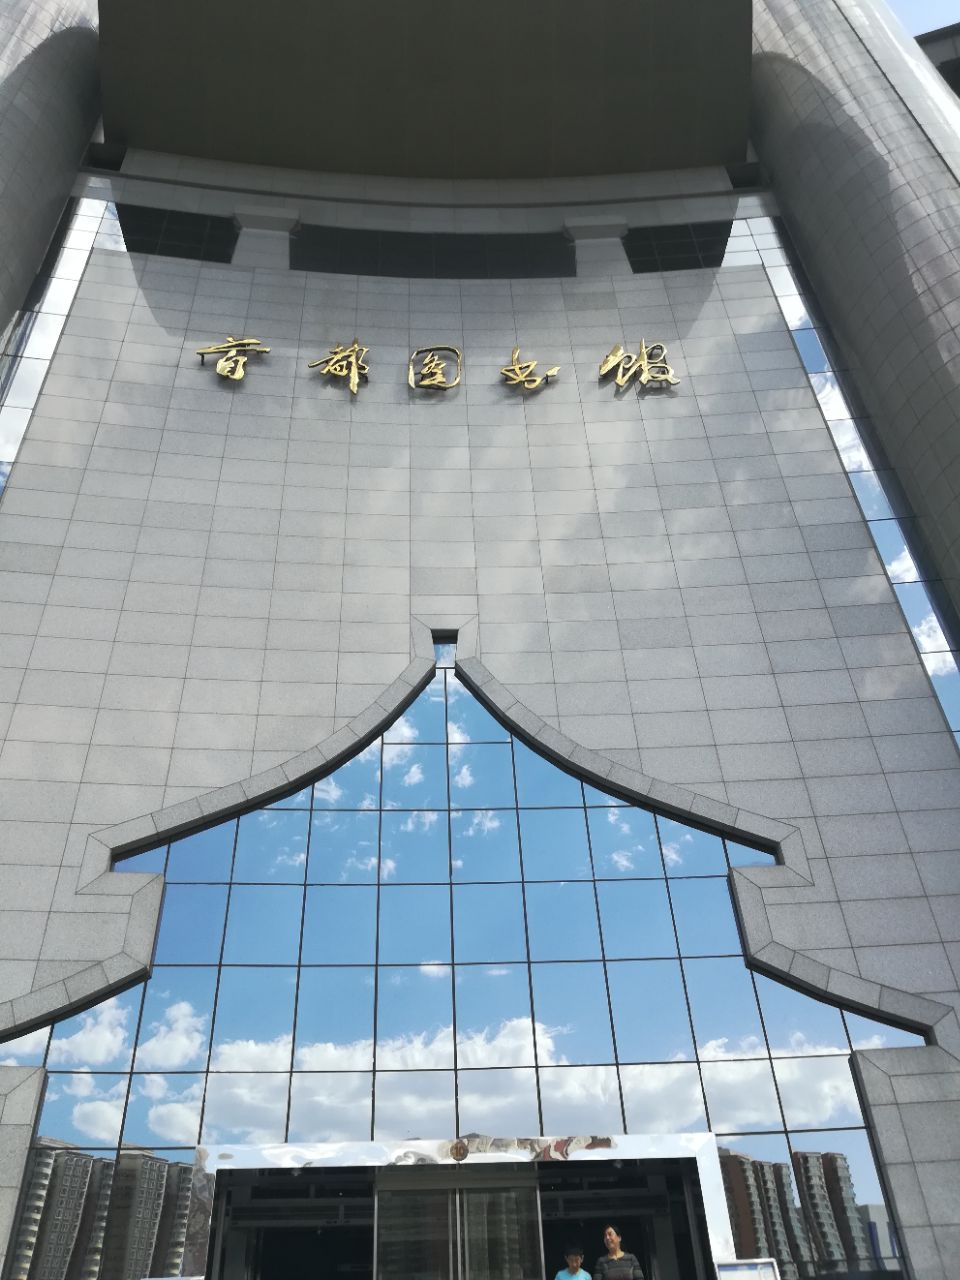 【携程攻略】北京首都图书馆景点,手图属于北京市的大型综合图书馆